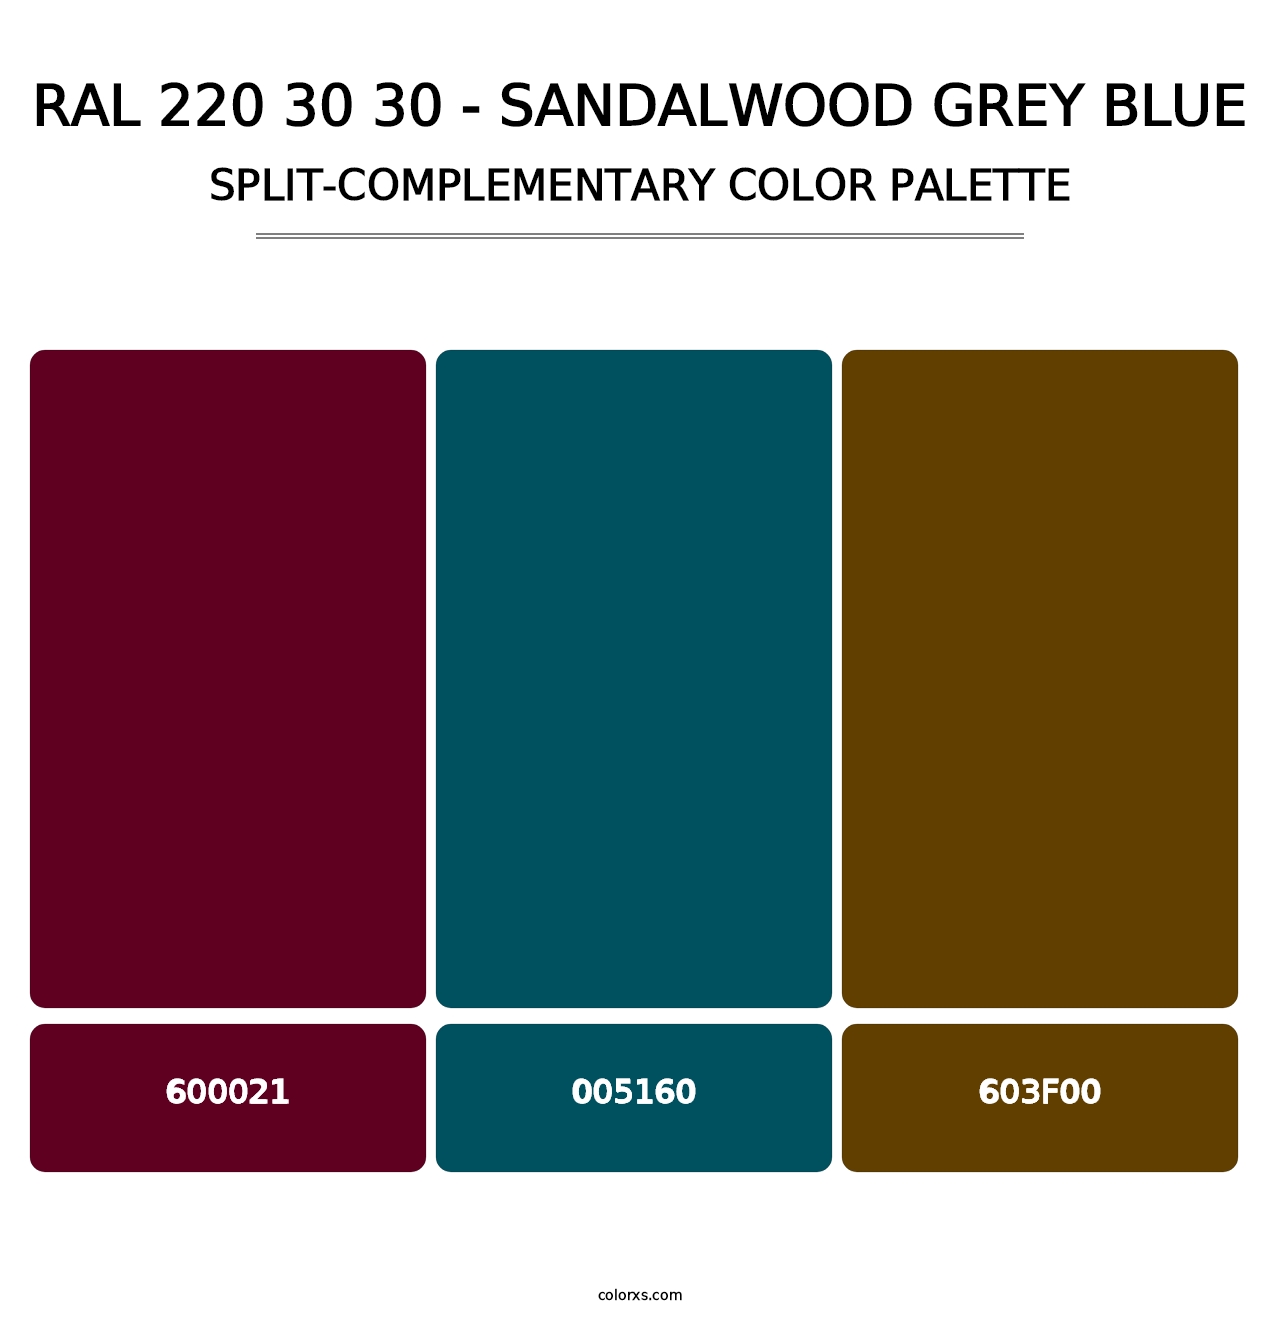 RAL 220 30 30 - Sandalwood Grey Blue - Split-Complementary Color Palette